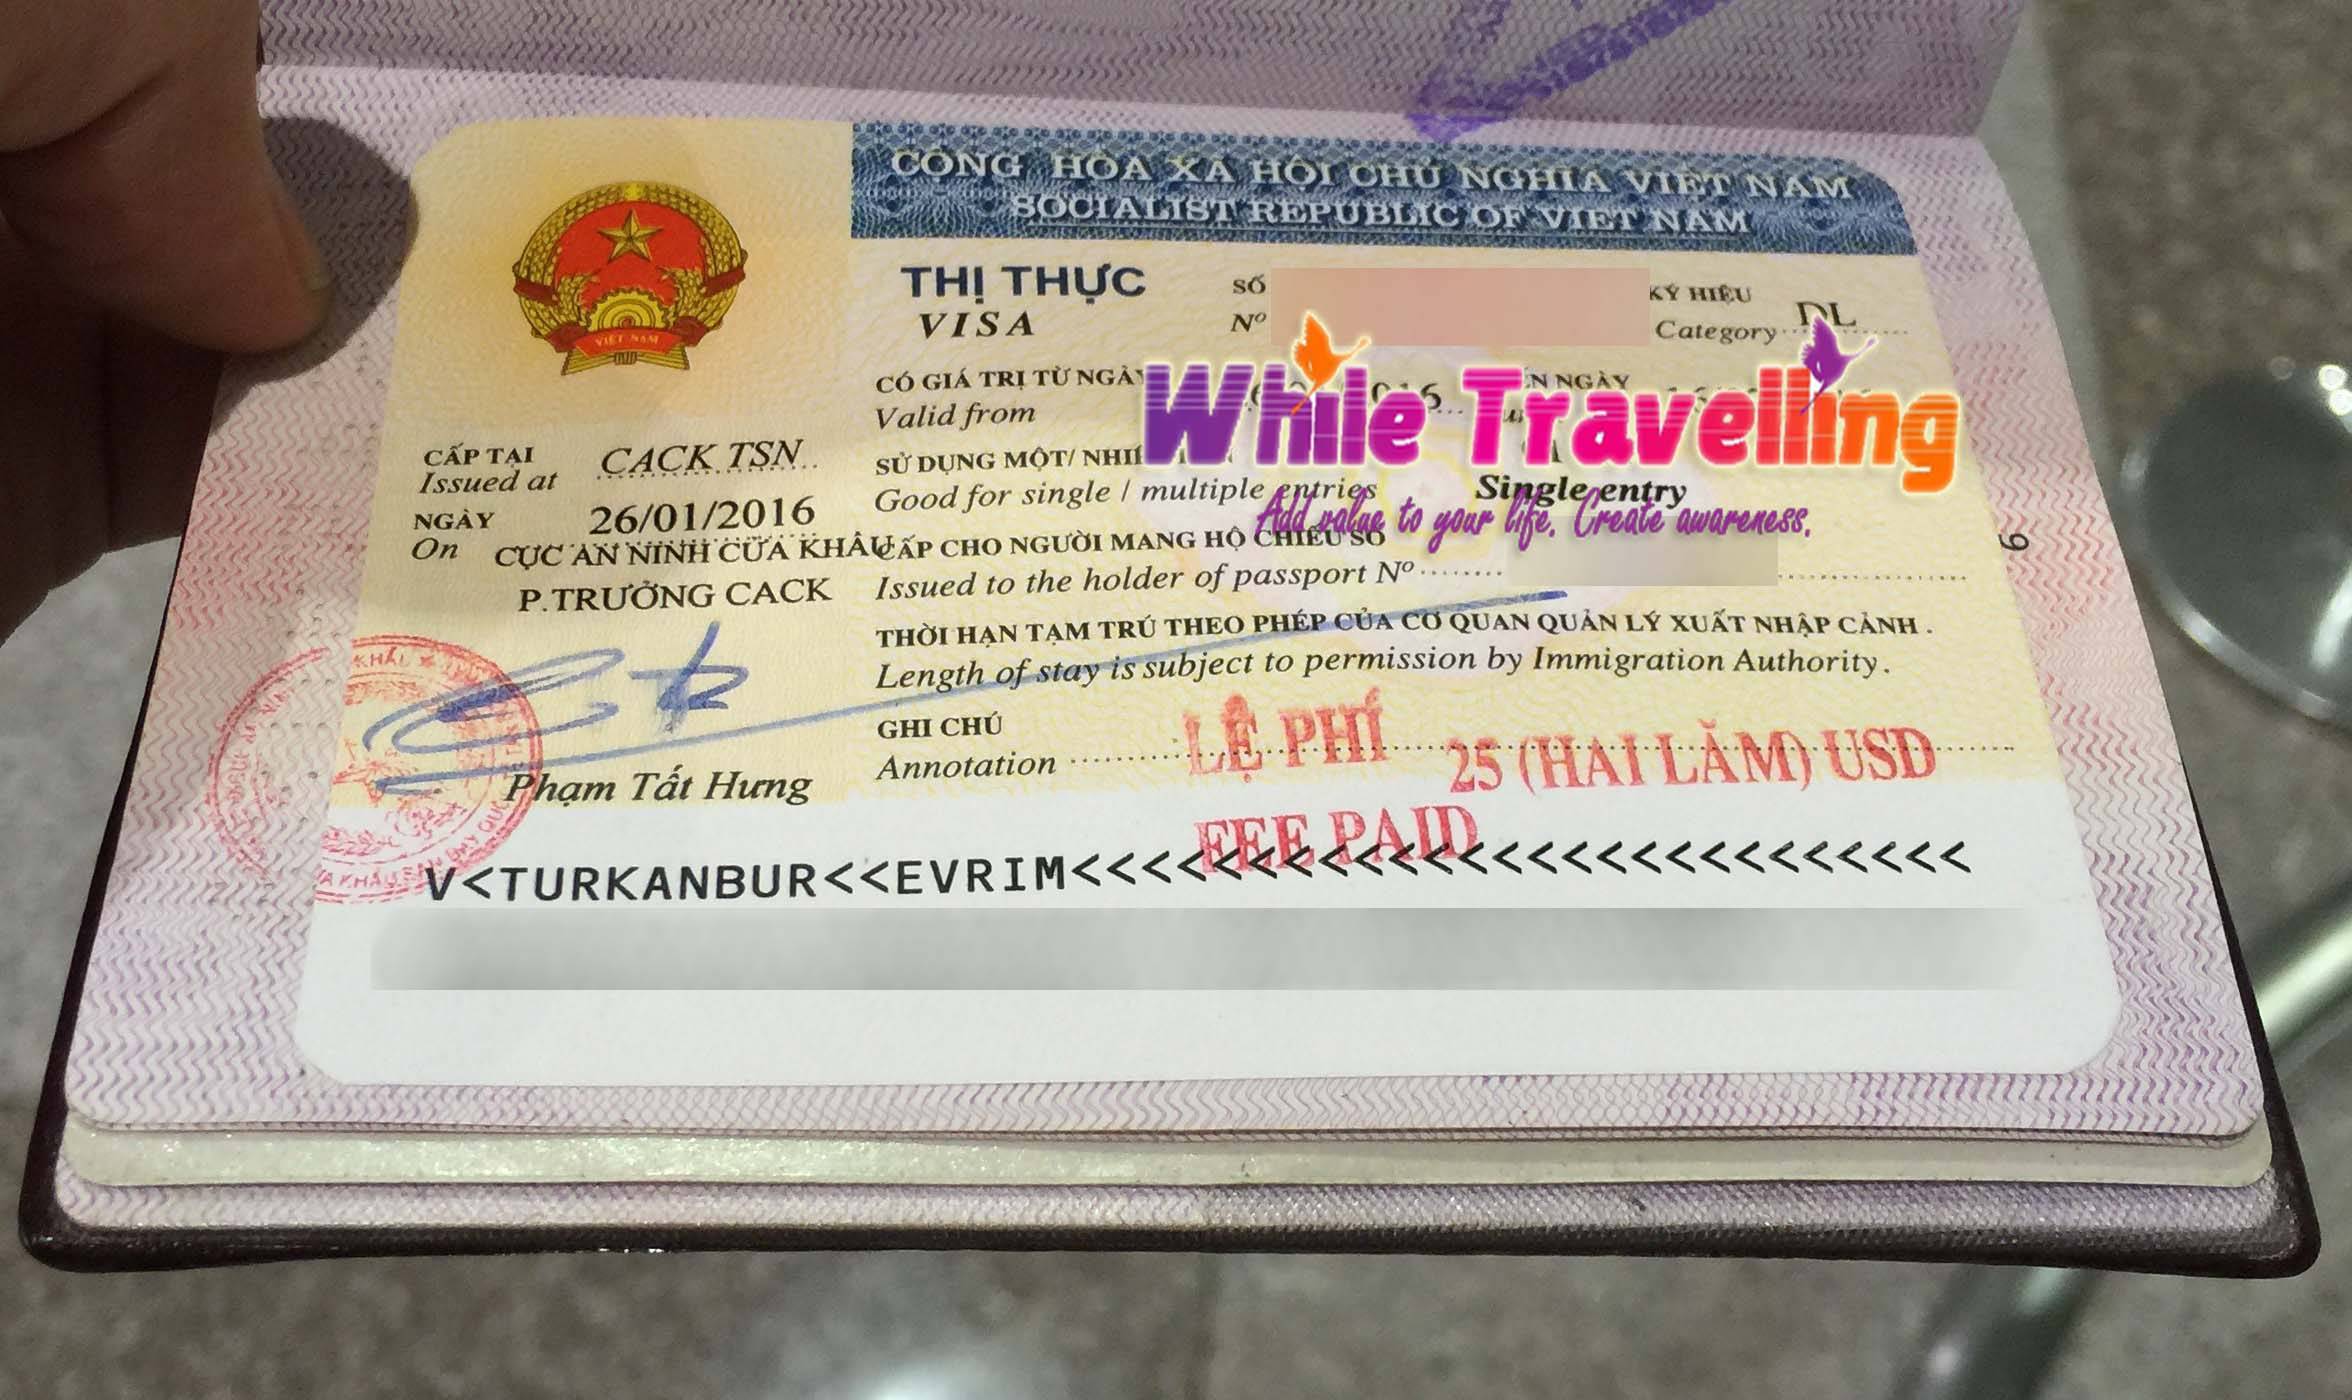 Виза во вьетнам - предлагаю помощь в оформлении визы